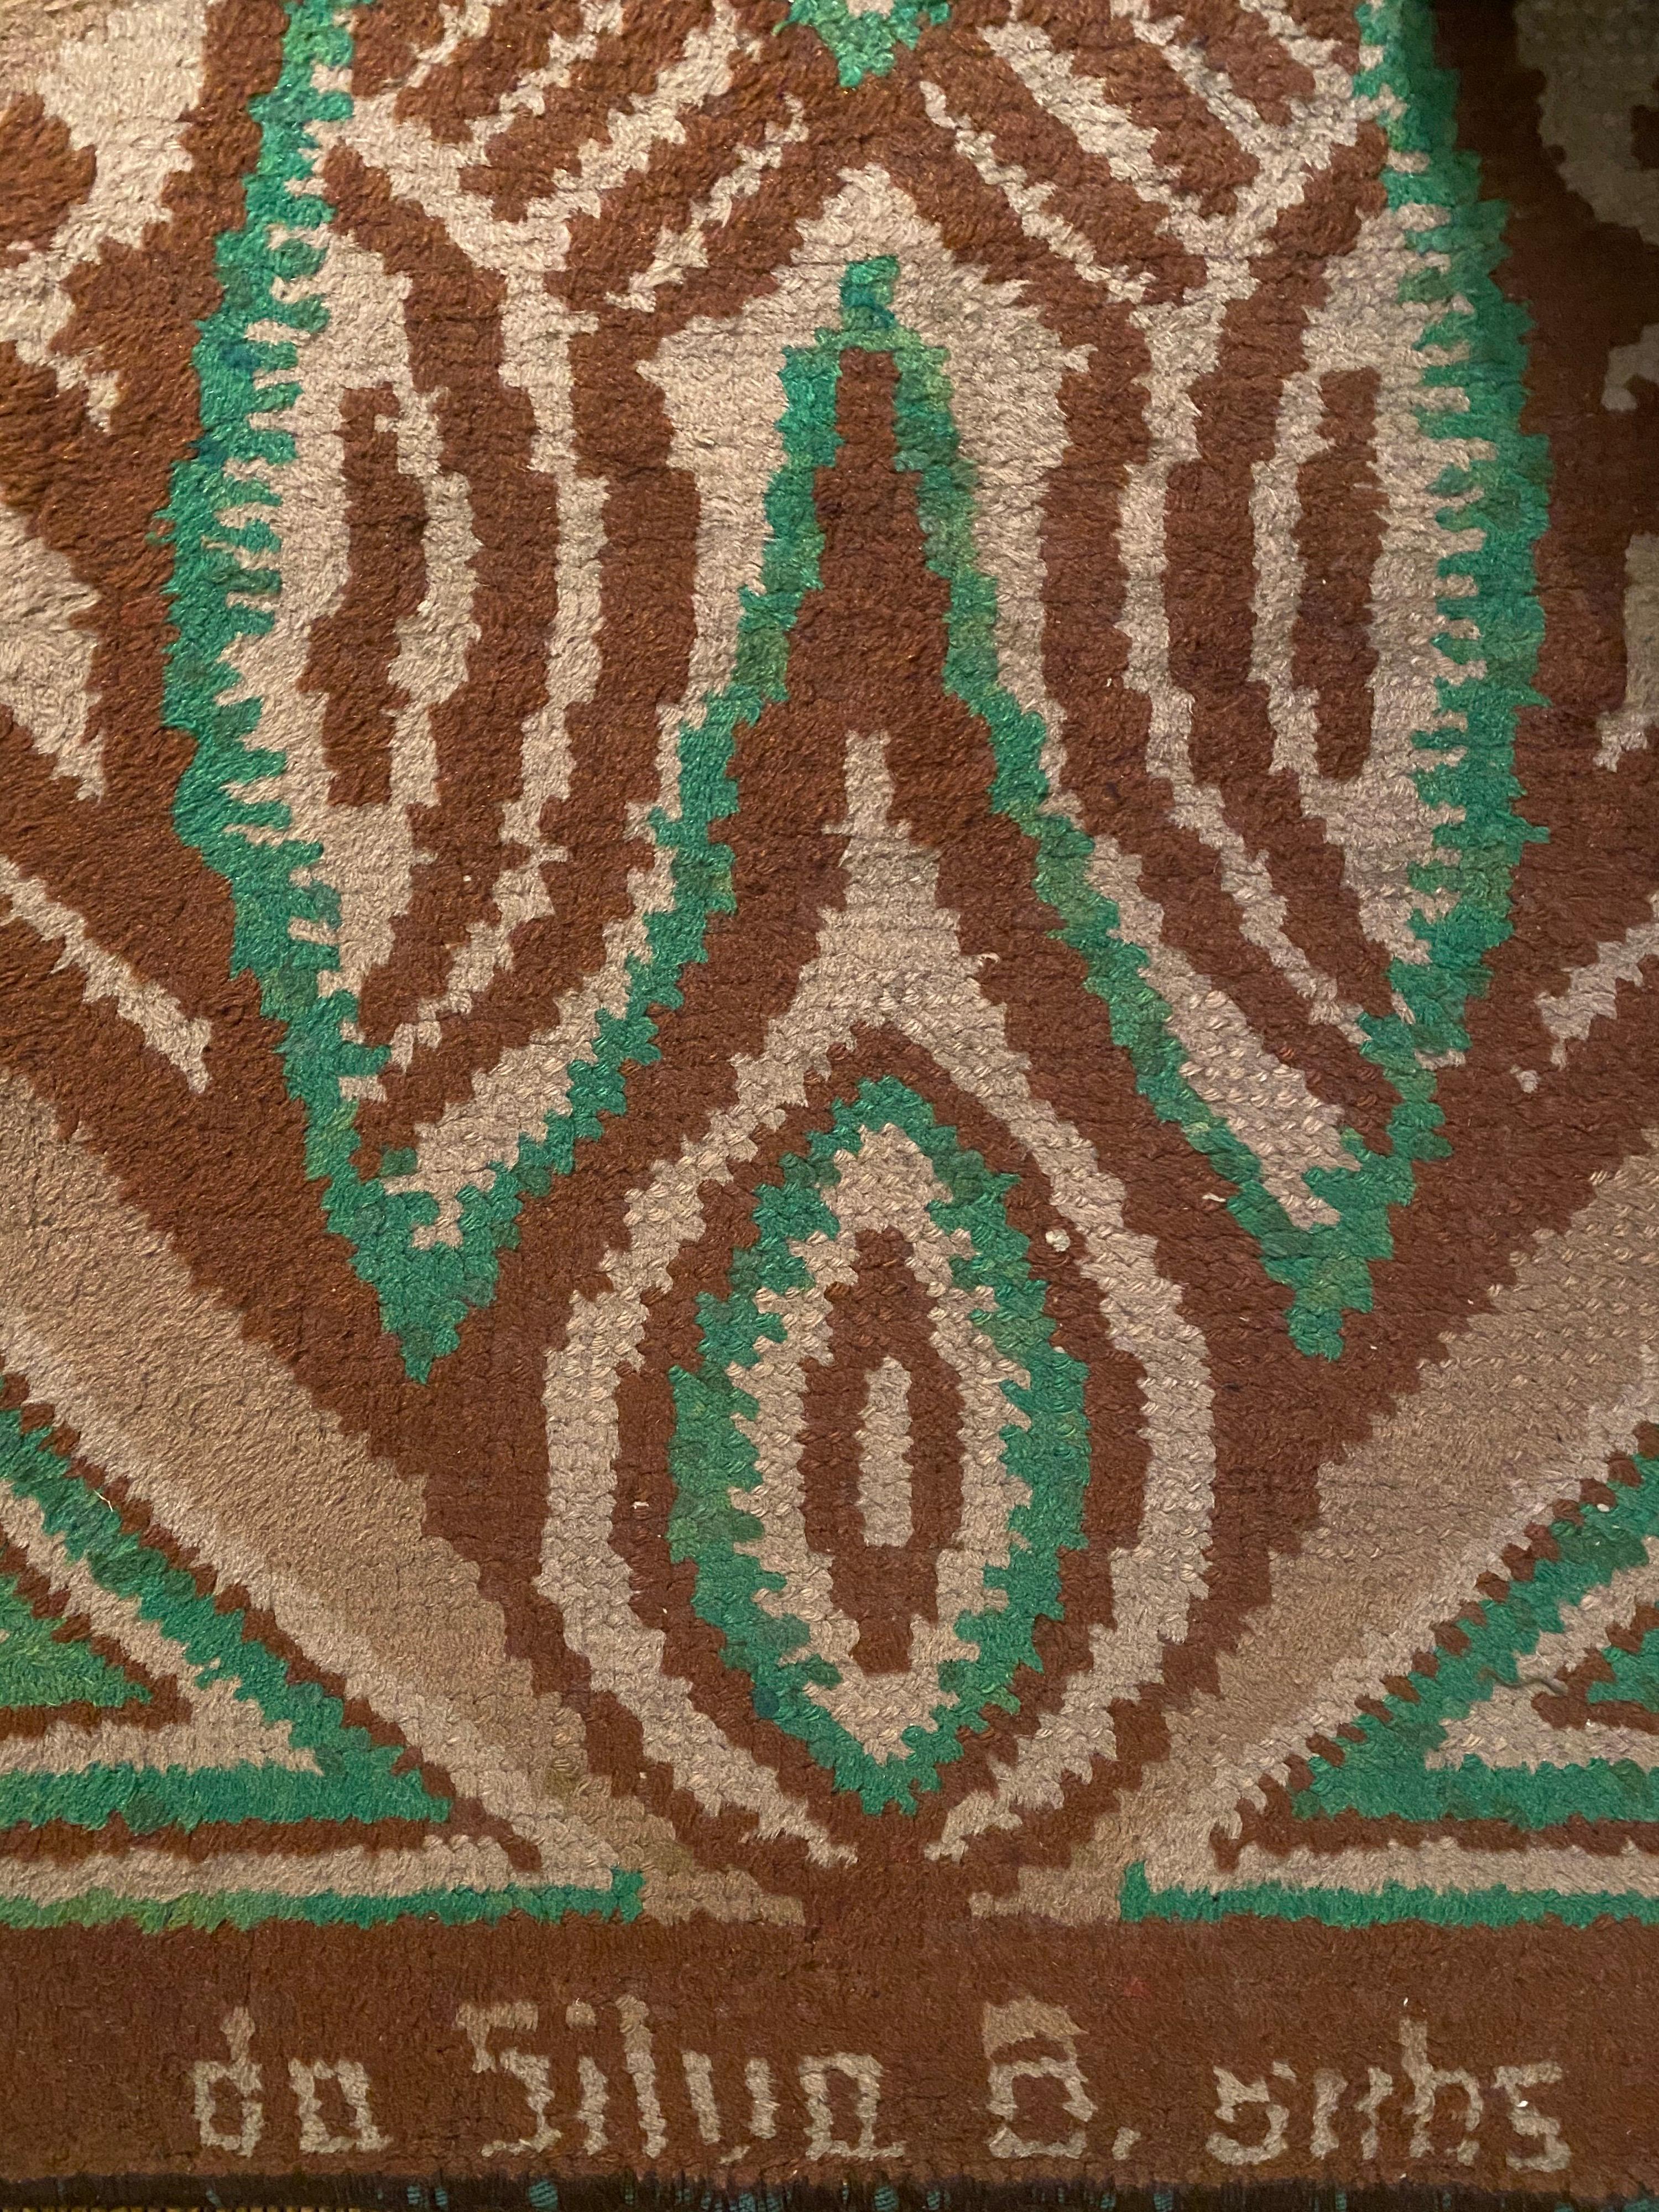 Rechteckiger Wollteppich mit afrikanisch inspiriertem geometrischem Motiv, entworfen von Ivan da Silva Bruhns um 1930. Der Teppich trägt am unteren Rand die Signatur des Künstlers 